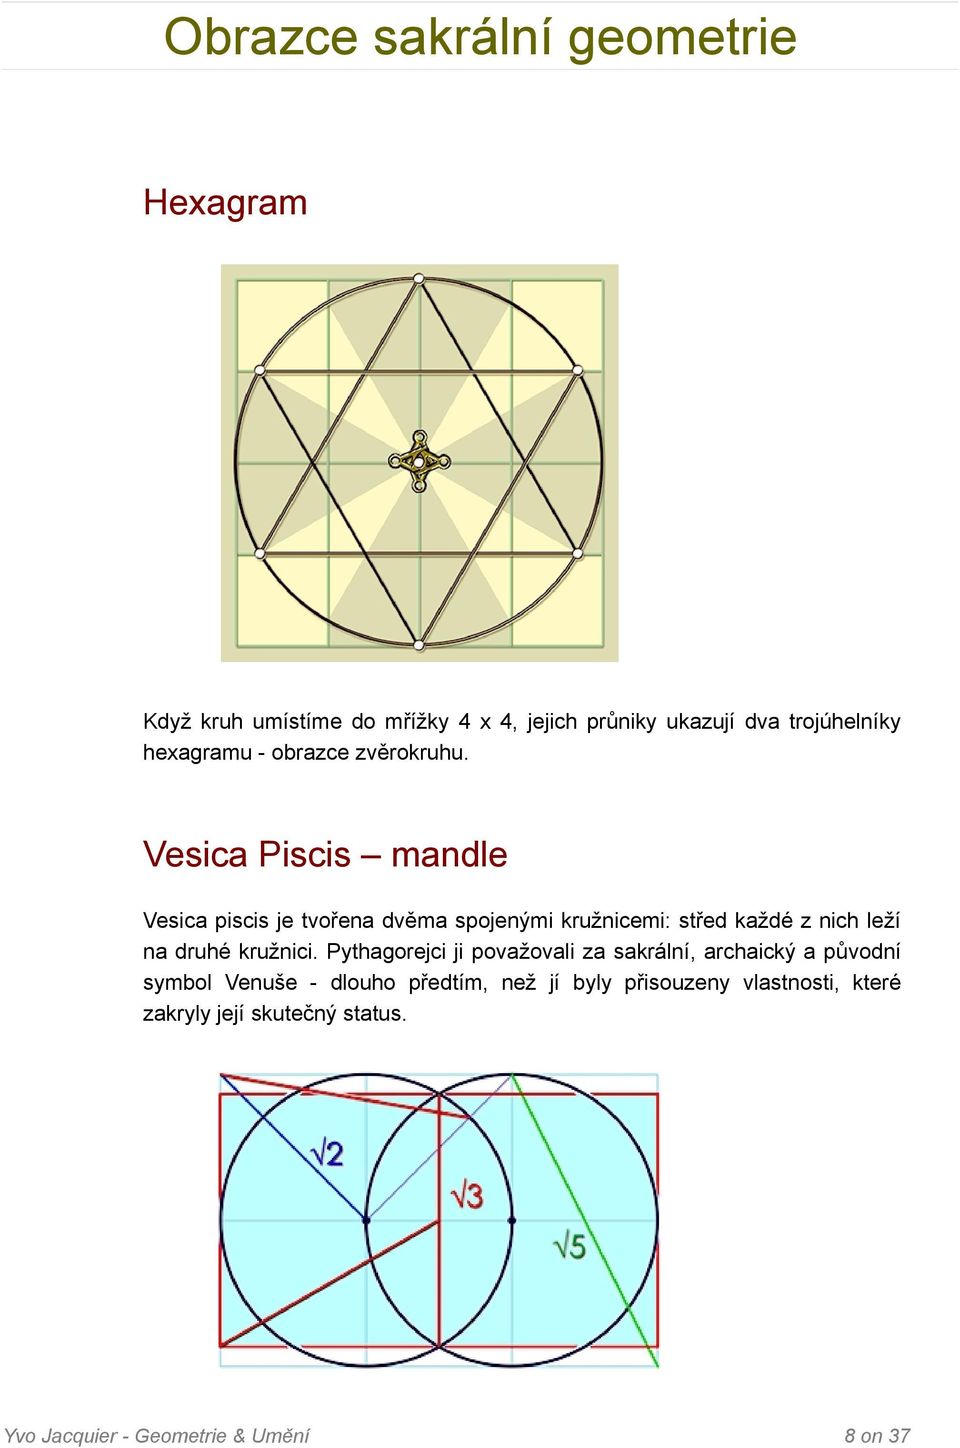 Vesica Piscis mandle Vesica piscis je tvořena dvěma spojenými kružnicemi: střed každé z nich leží na druhé